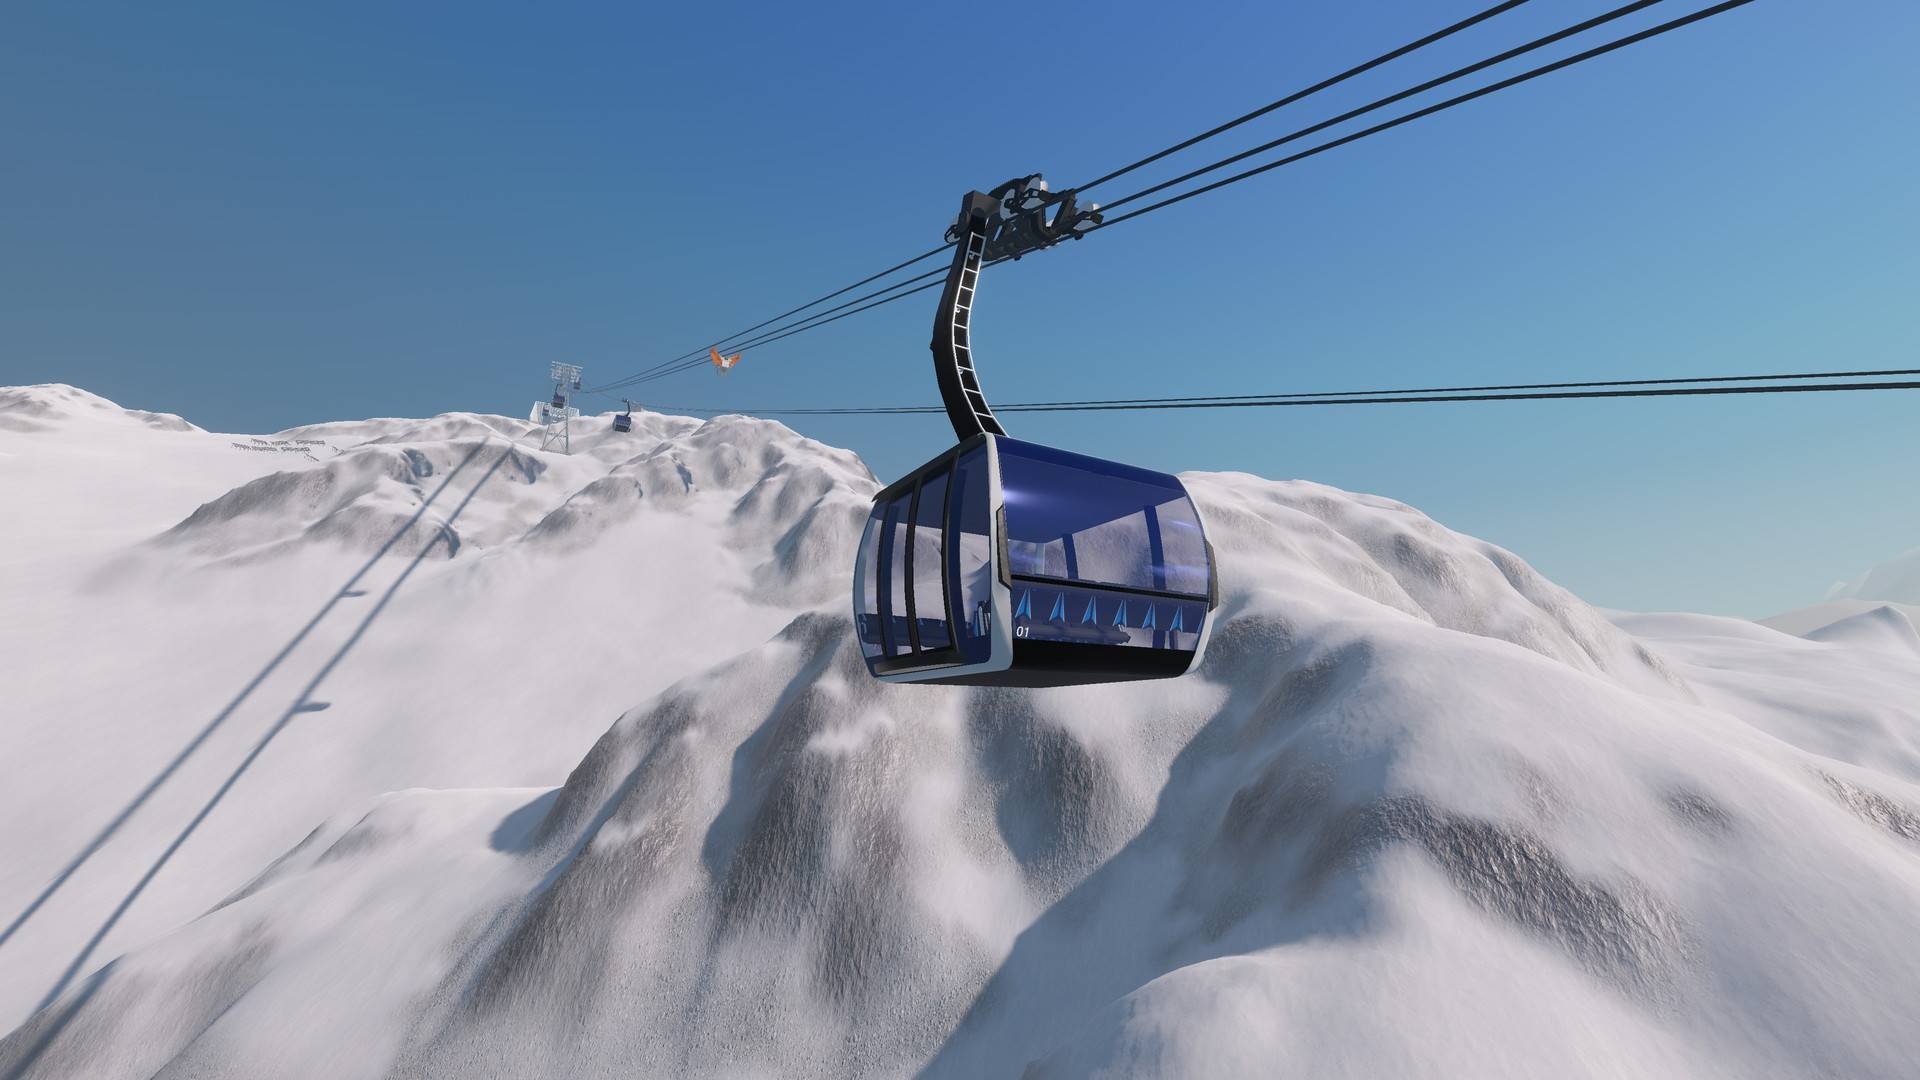 Aerial Tramway, Winter resort simulator, PC game, Steam, 1920x1080 Full HD Desktop